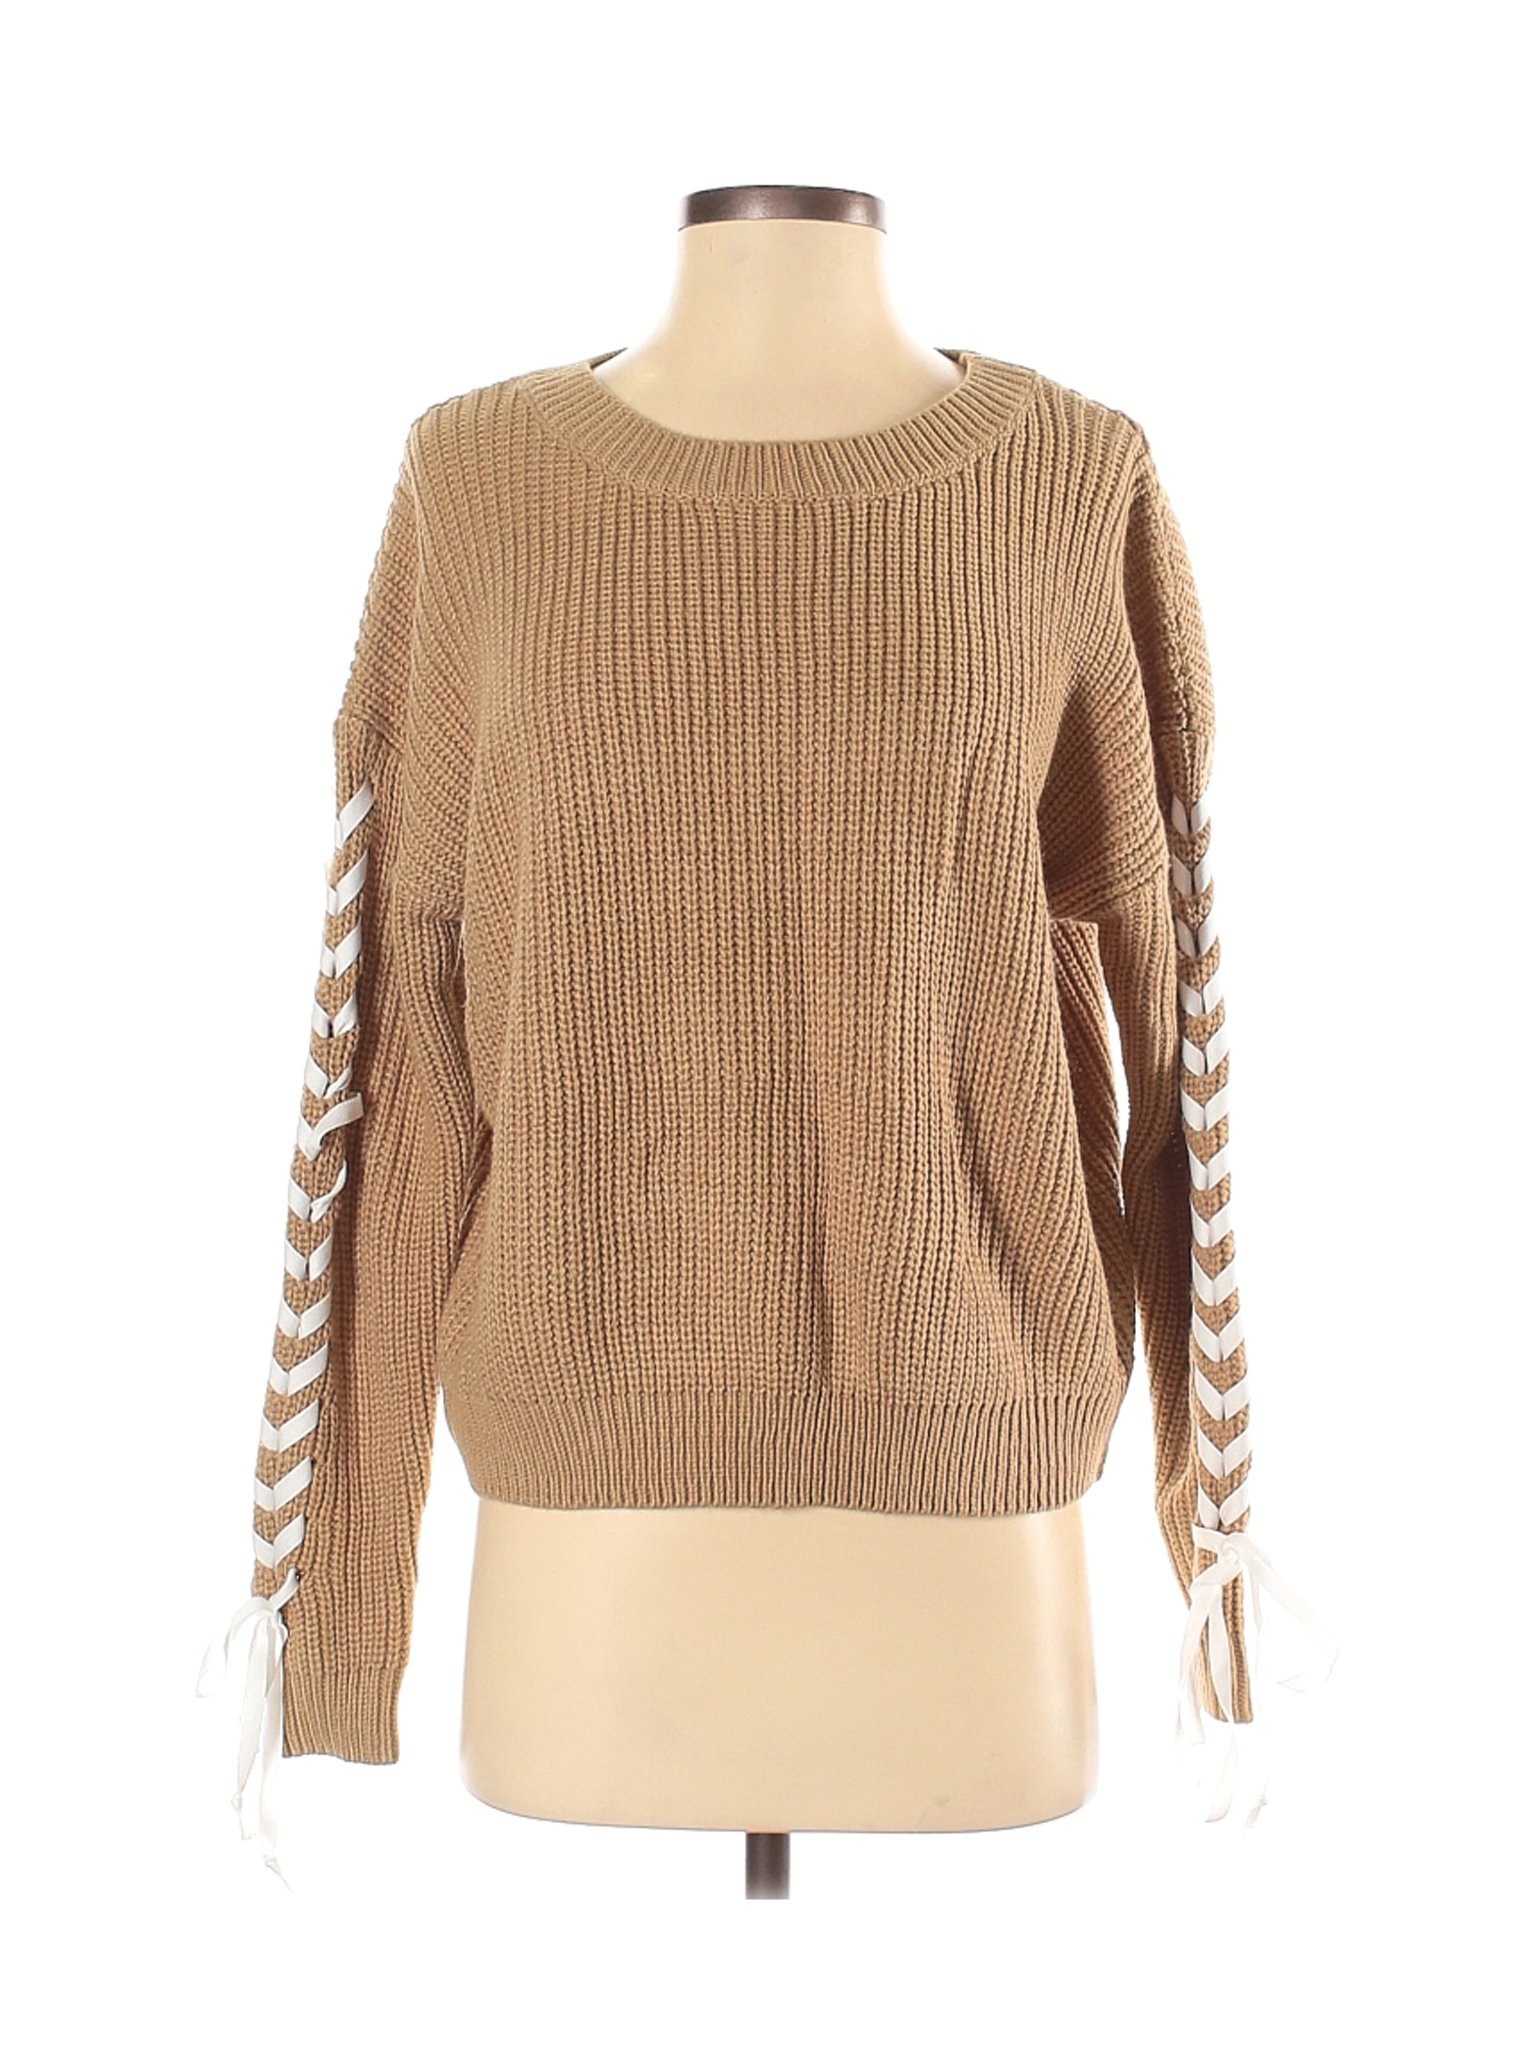 Shein Women Brown Pullover Sweater S | eBay